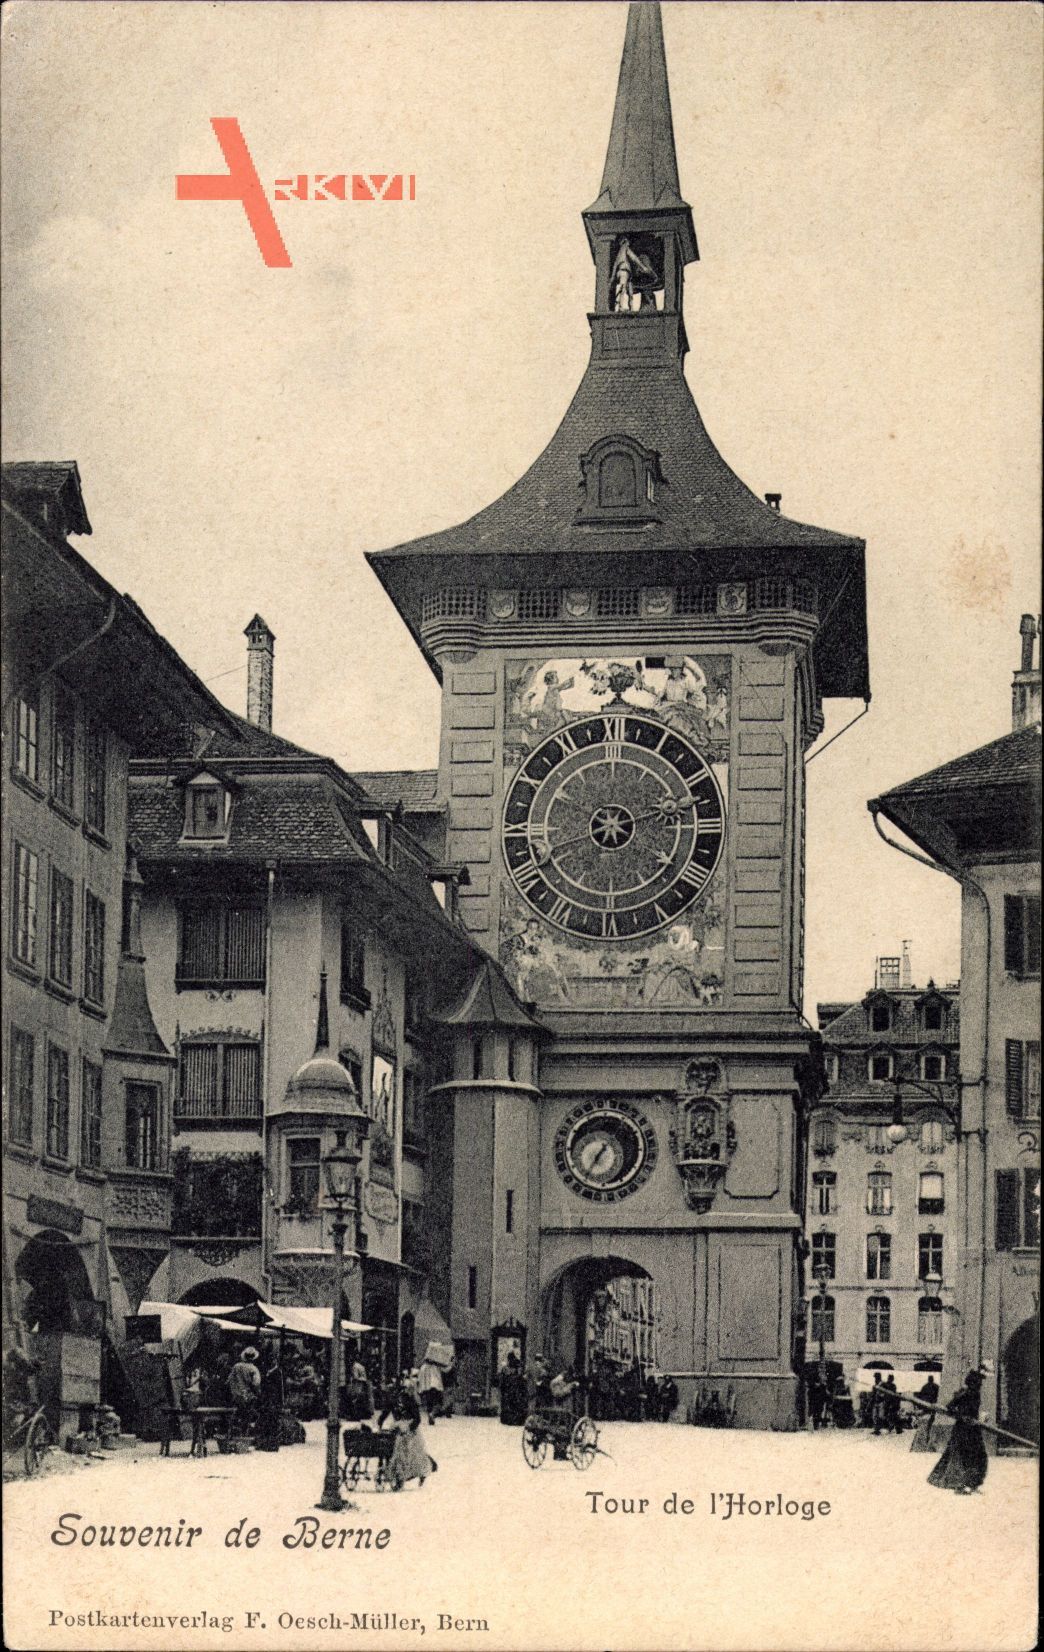 Bern Stadt Schweiz, Tour de lHorloge, Straßenpartie mit Blick auf Uhrturm